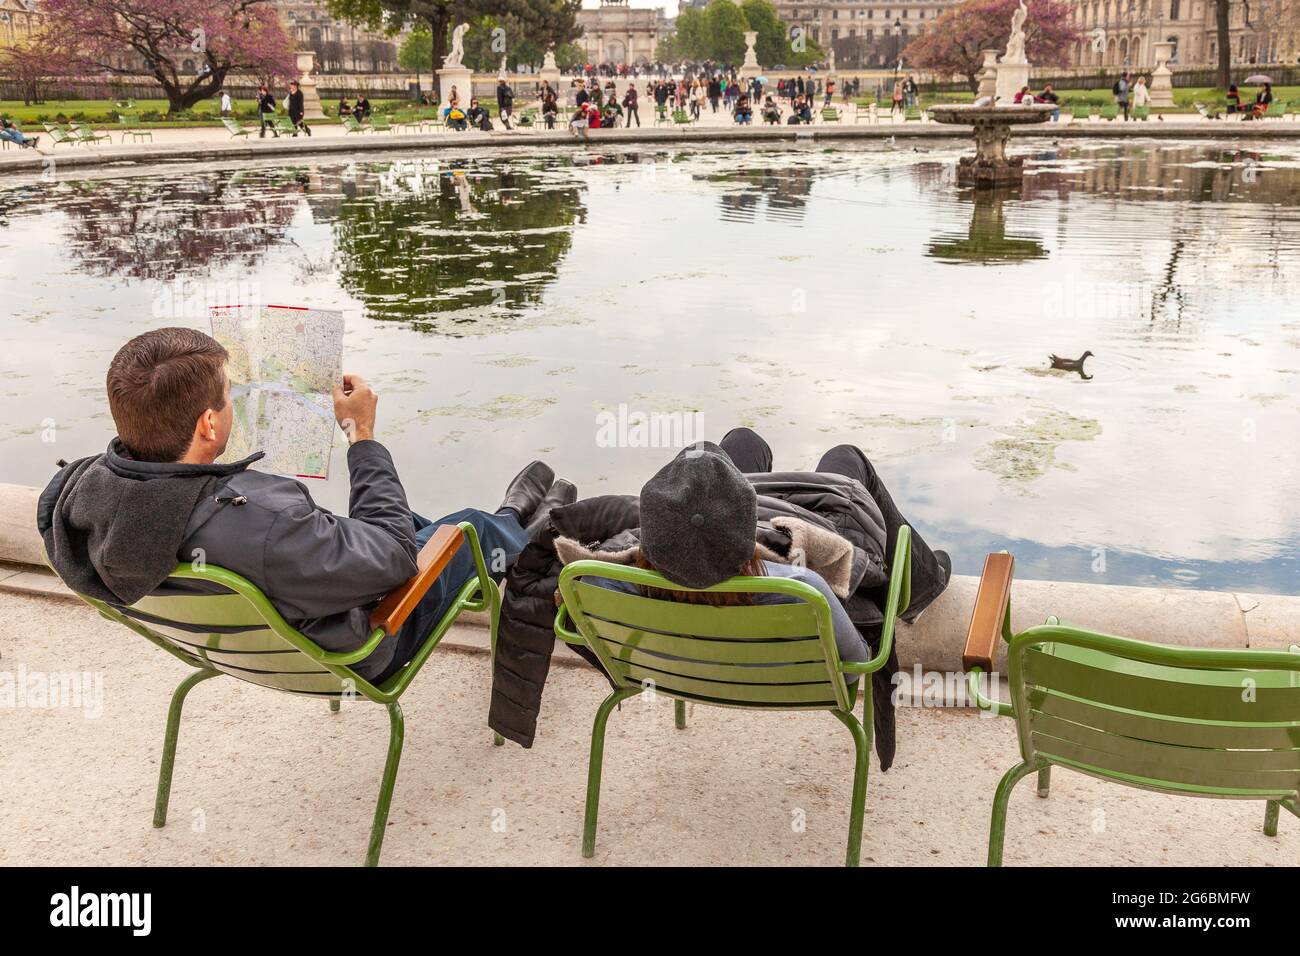 Zwei Touristen, die in ihren Stühlen schaukeln, sitzen am Rande eines Wasserkörpers im Garten der Tuilerien in Paris Stockfoto